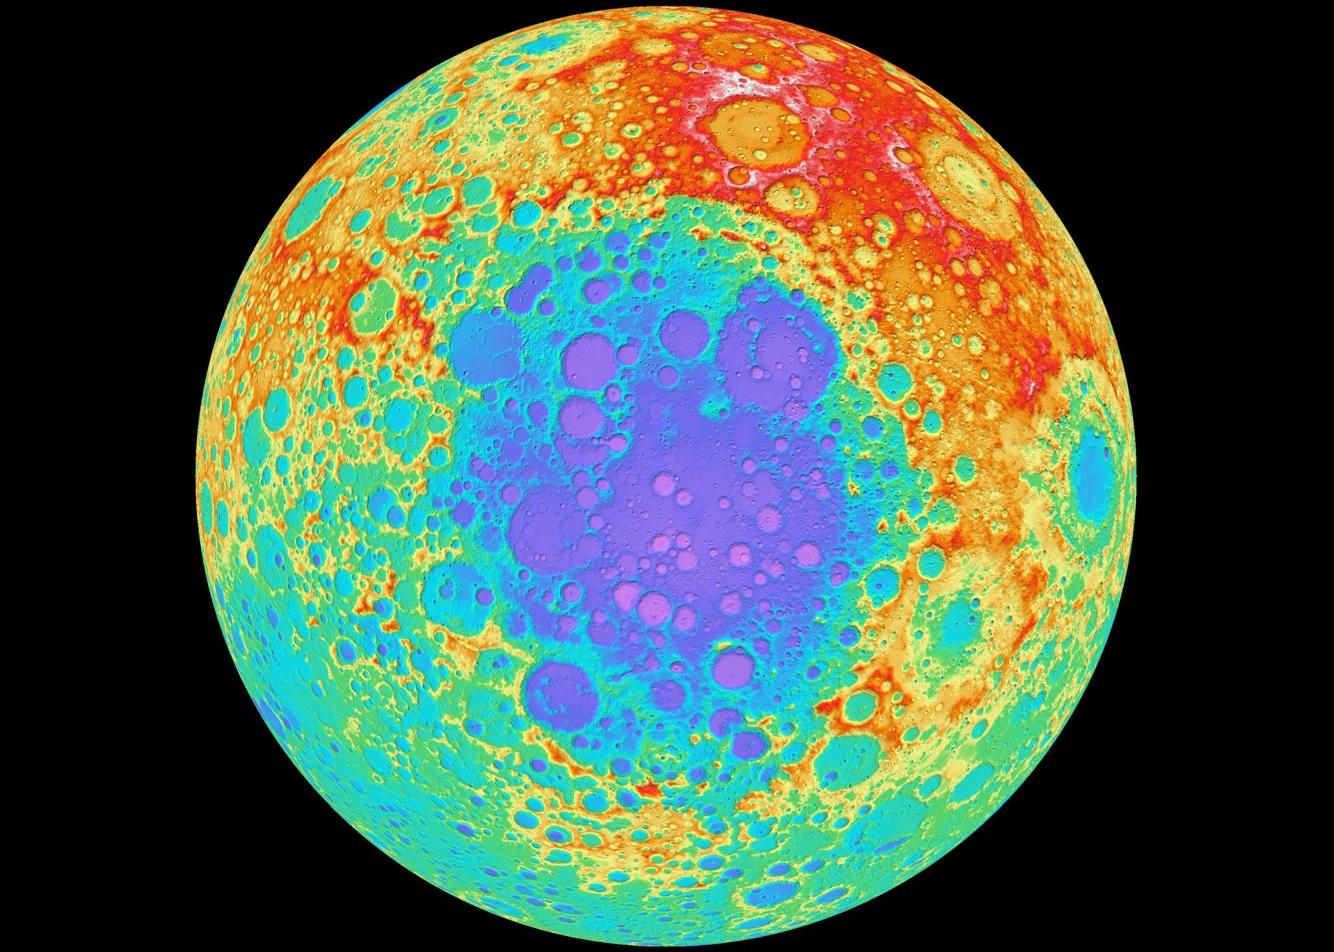 Descubren una enorme masa metálica enterrada en la Luna